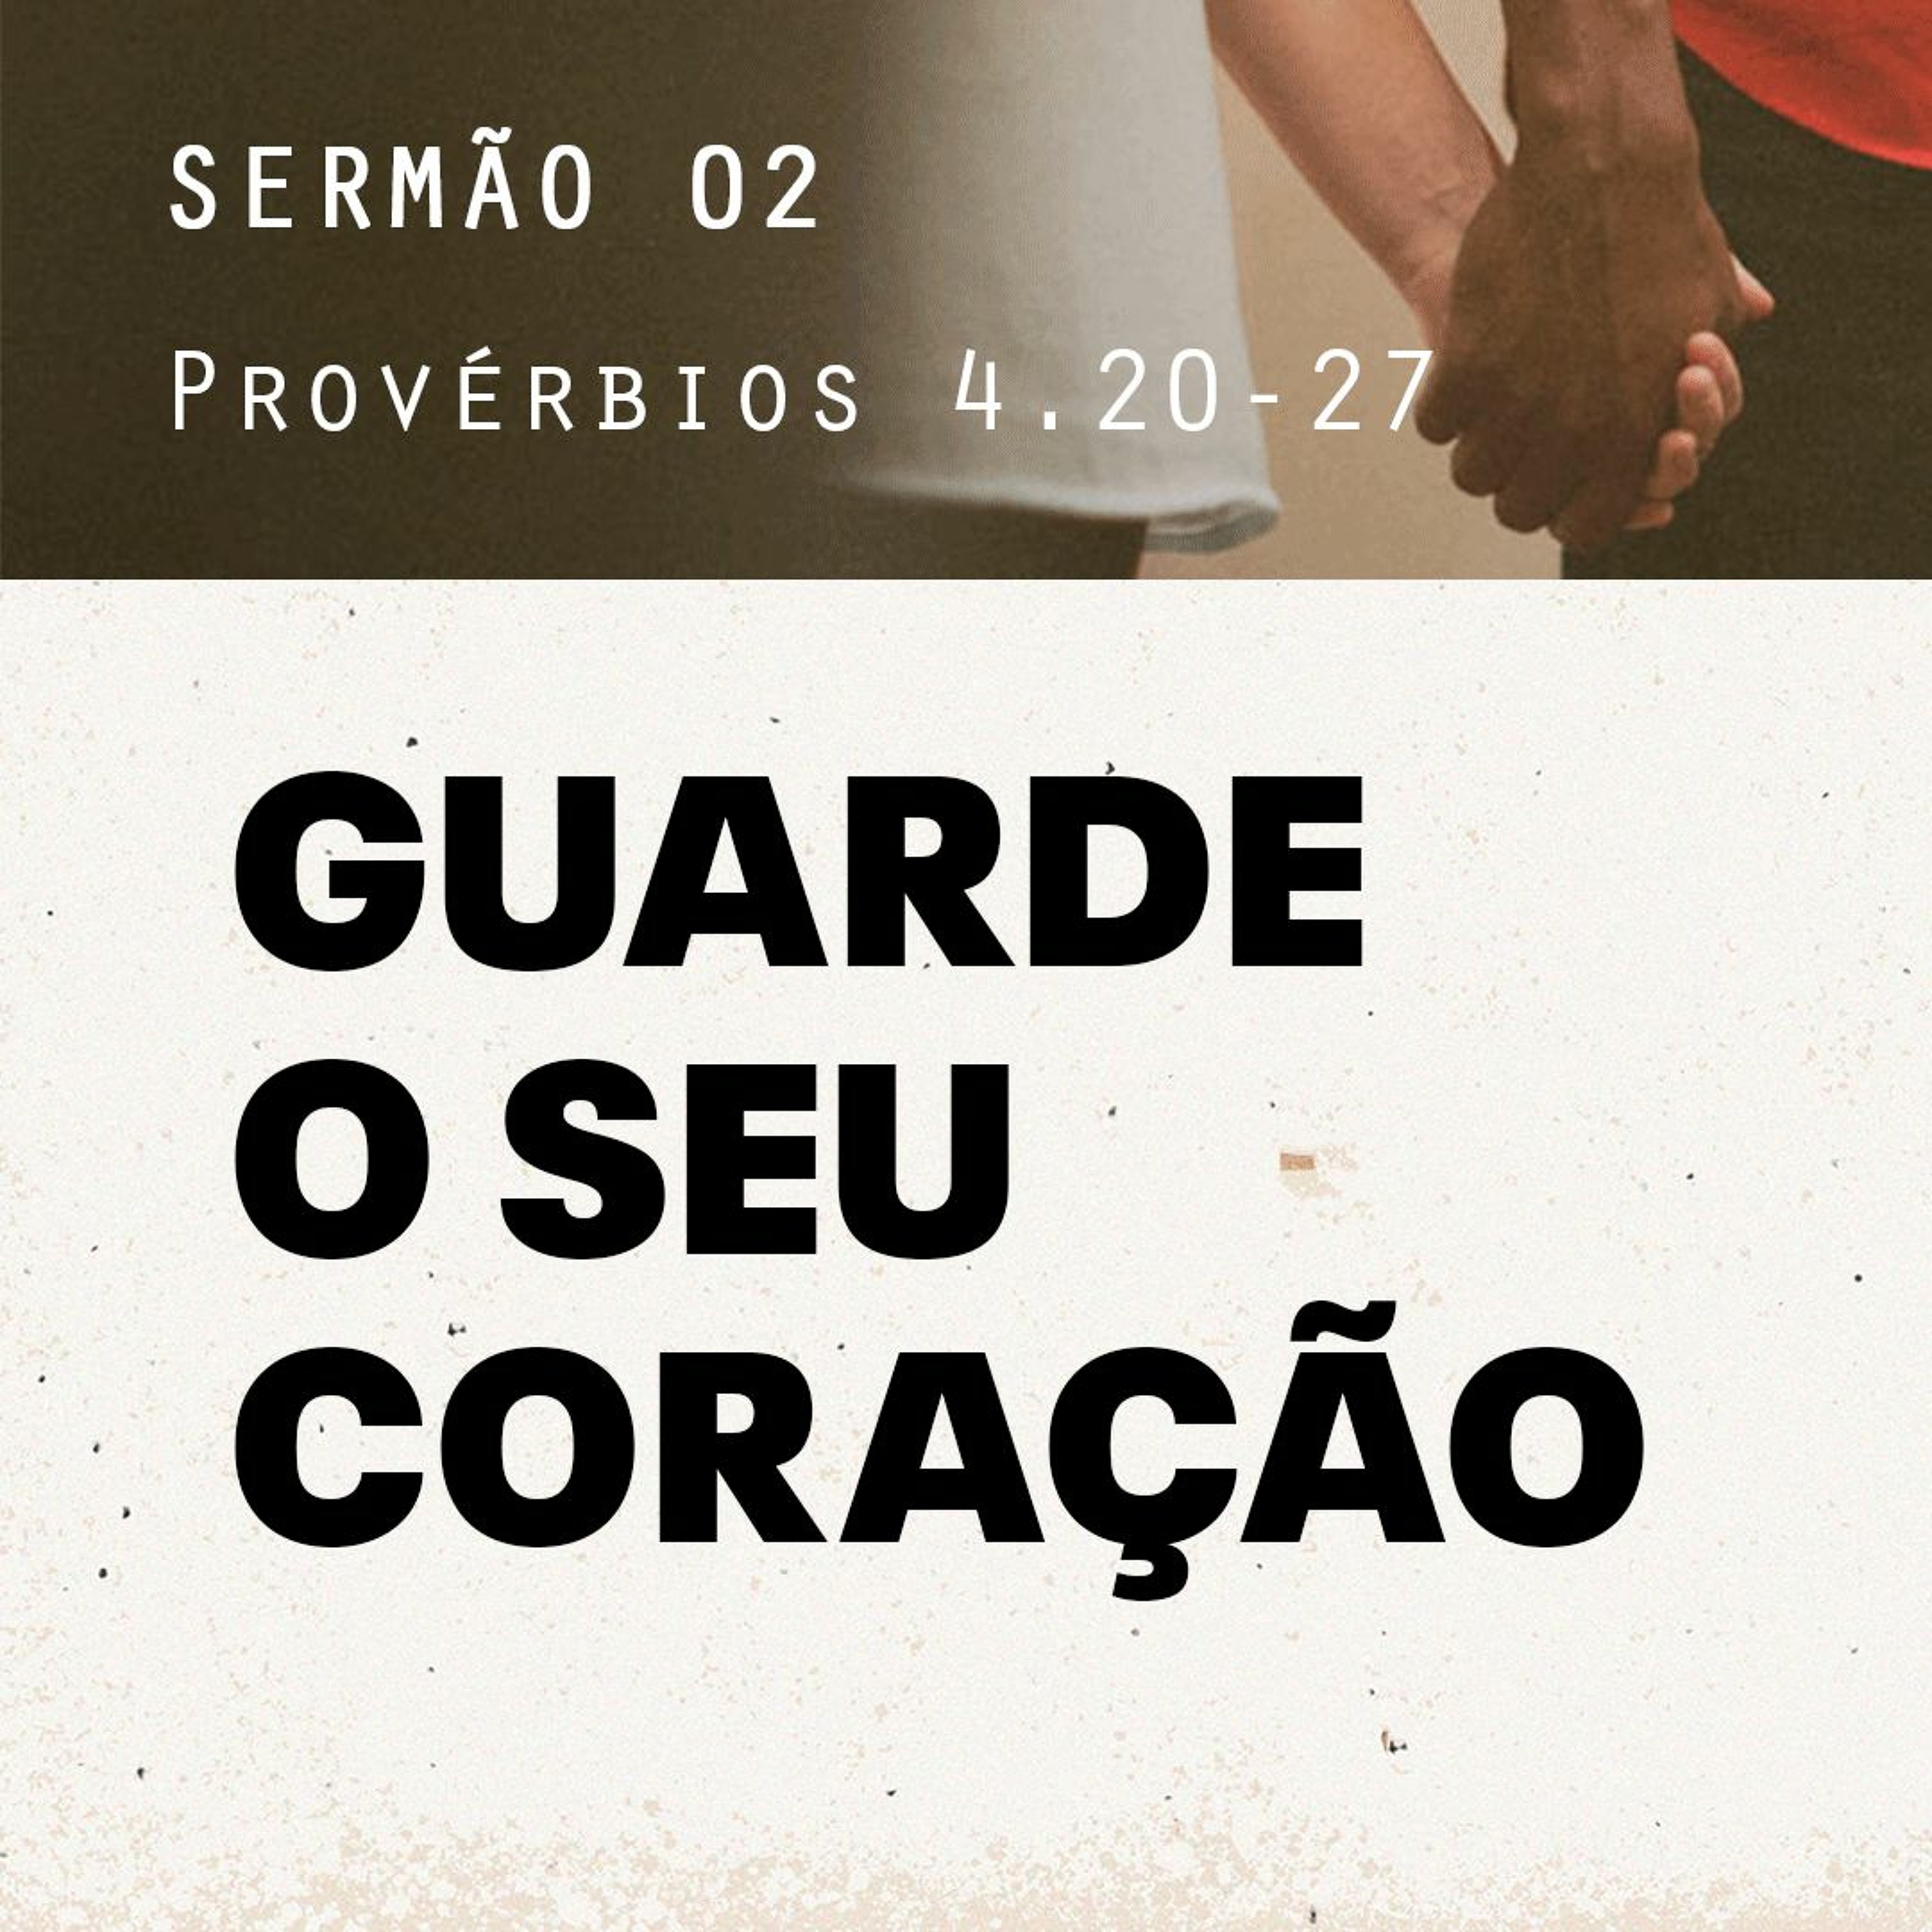 2. Guarde seu coração (Provérbios 4.20-27) - Pr. Gabriel Junqueira